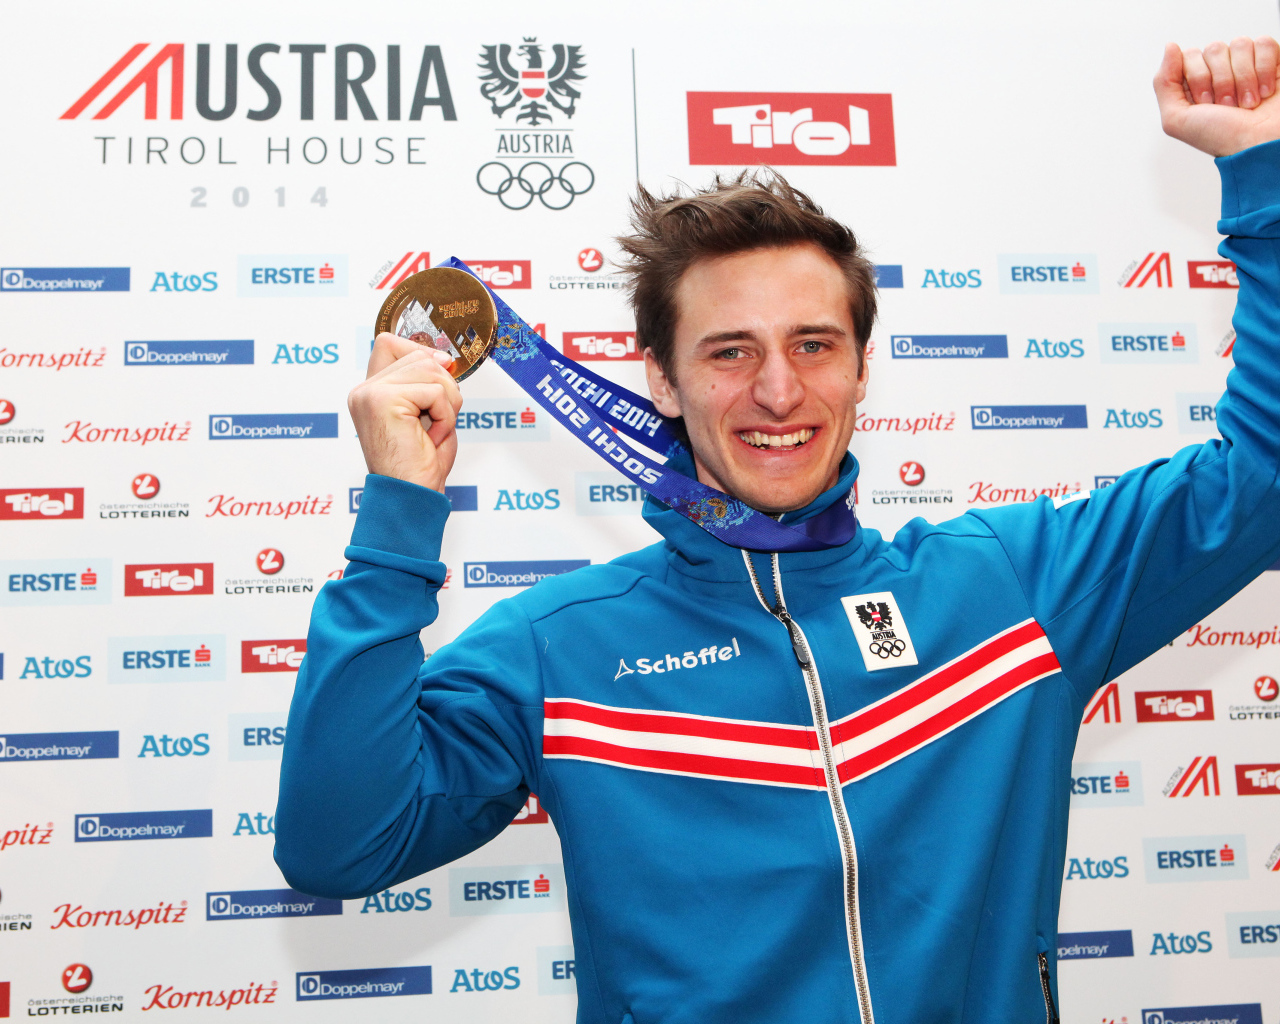 Маттиас Майер австрийский лыжник обладатель золотой медали в Сочи